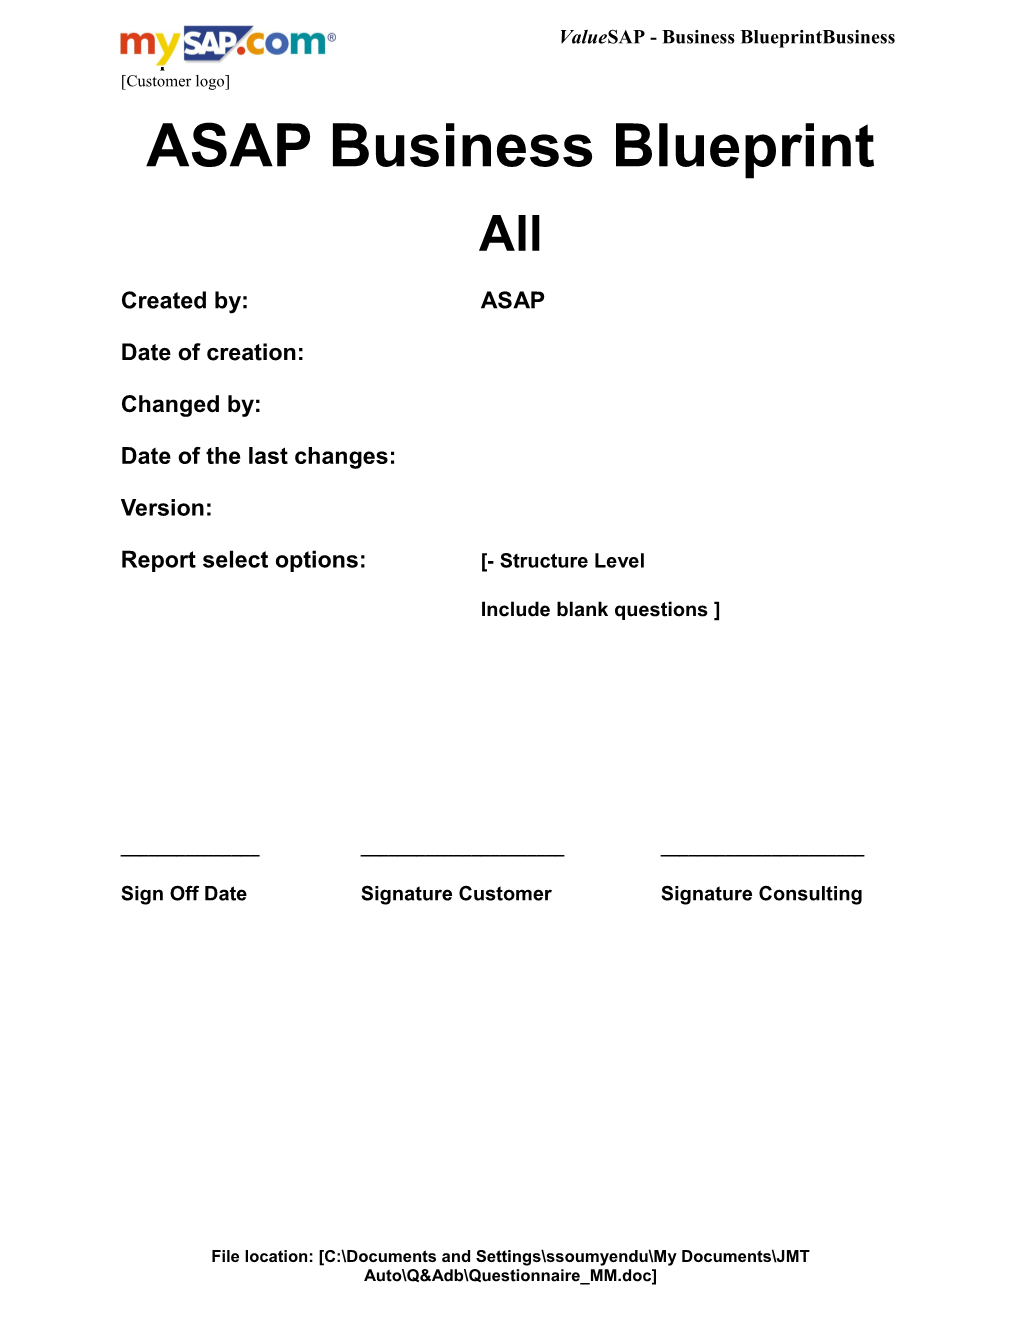 ASAP Business Blueprint